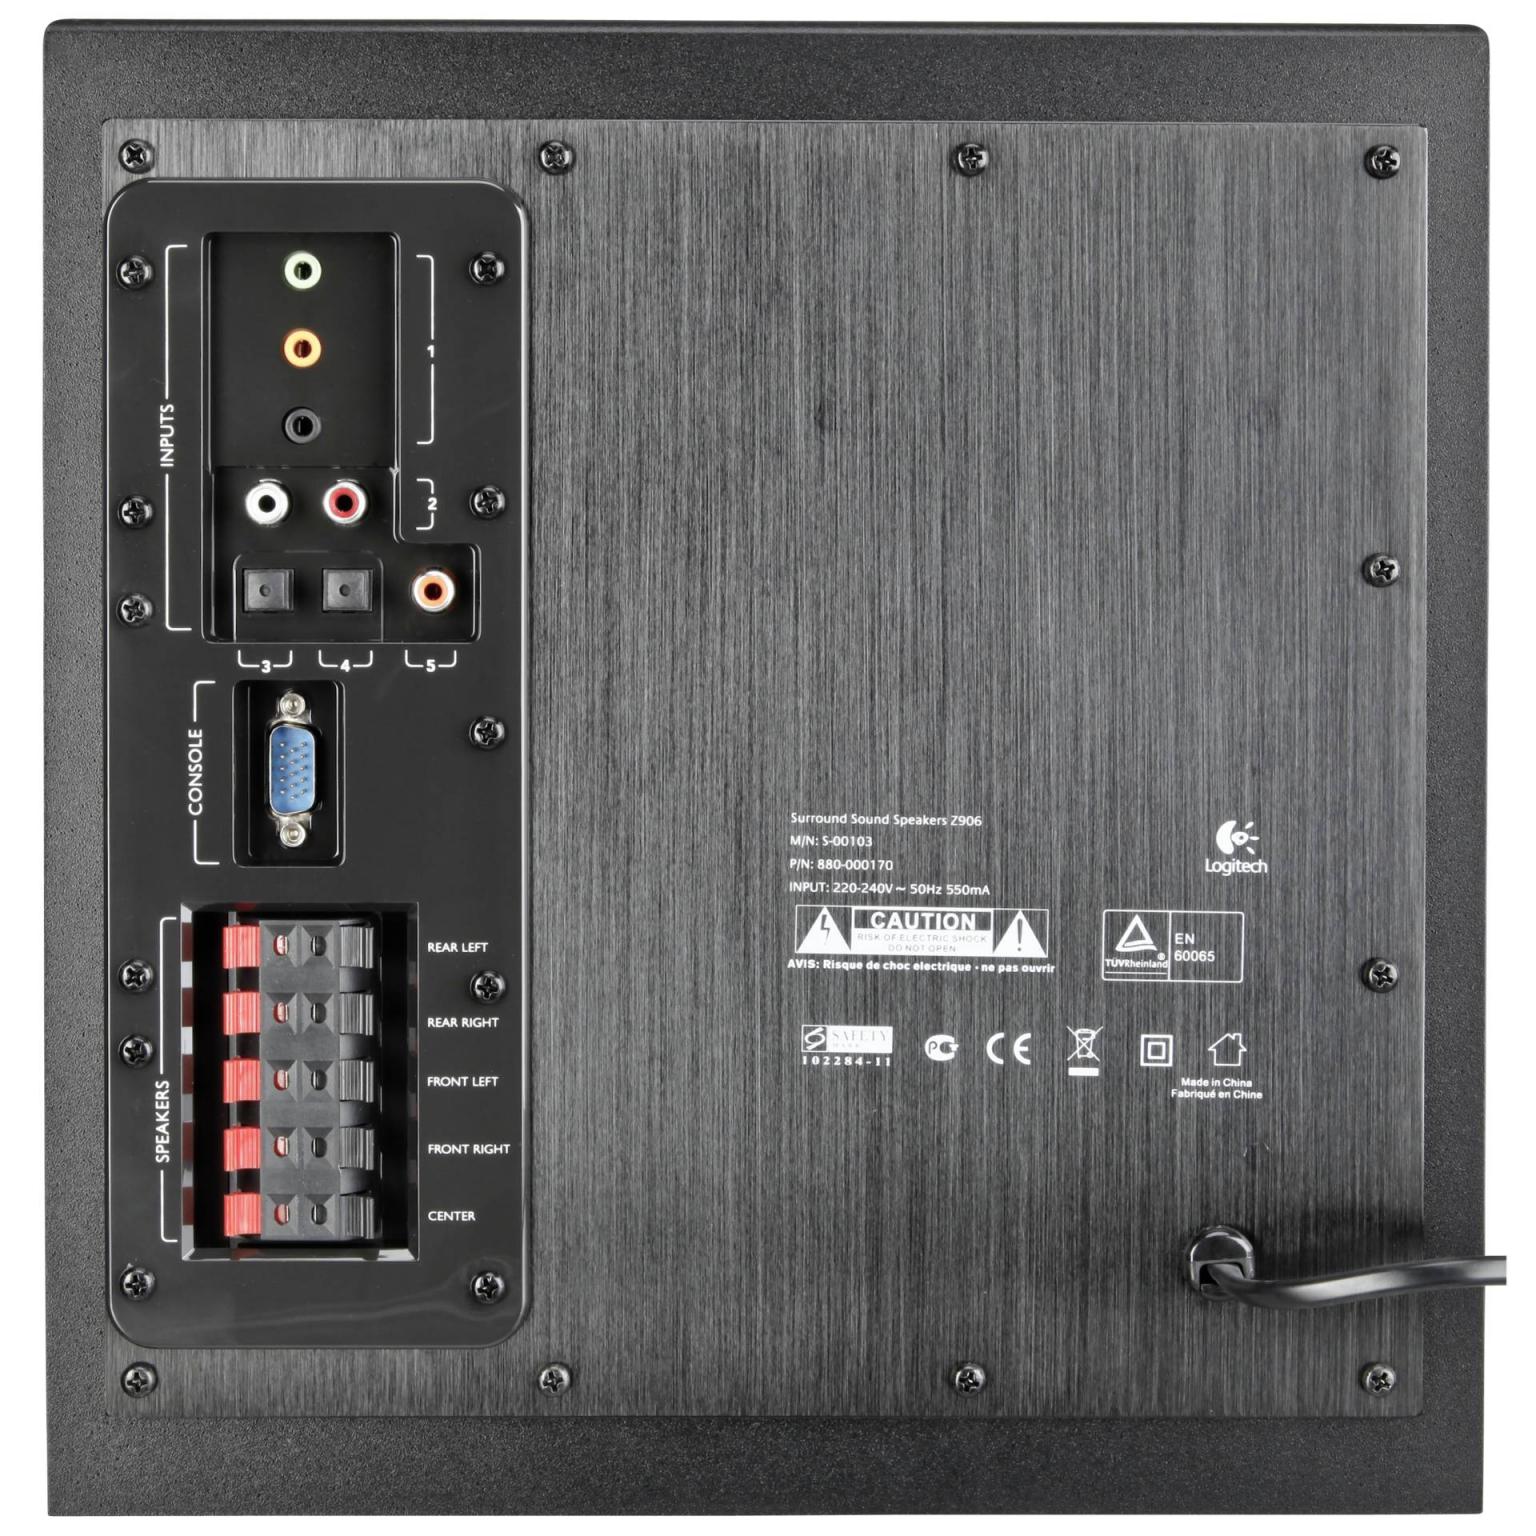 Z906 Surround Sound Speaker System - Surround Sound System